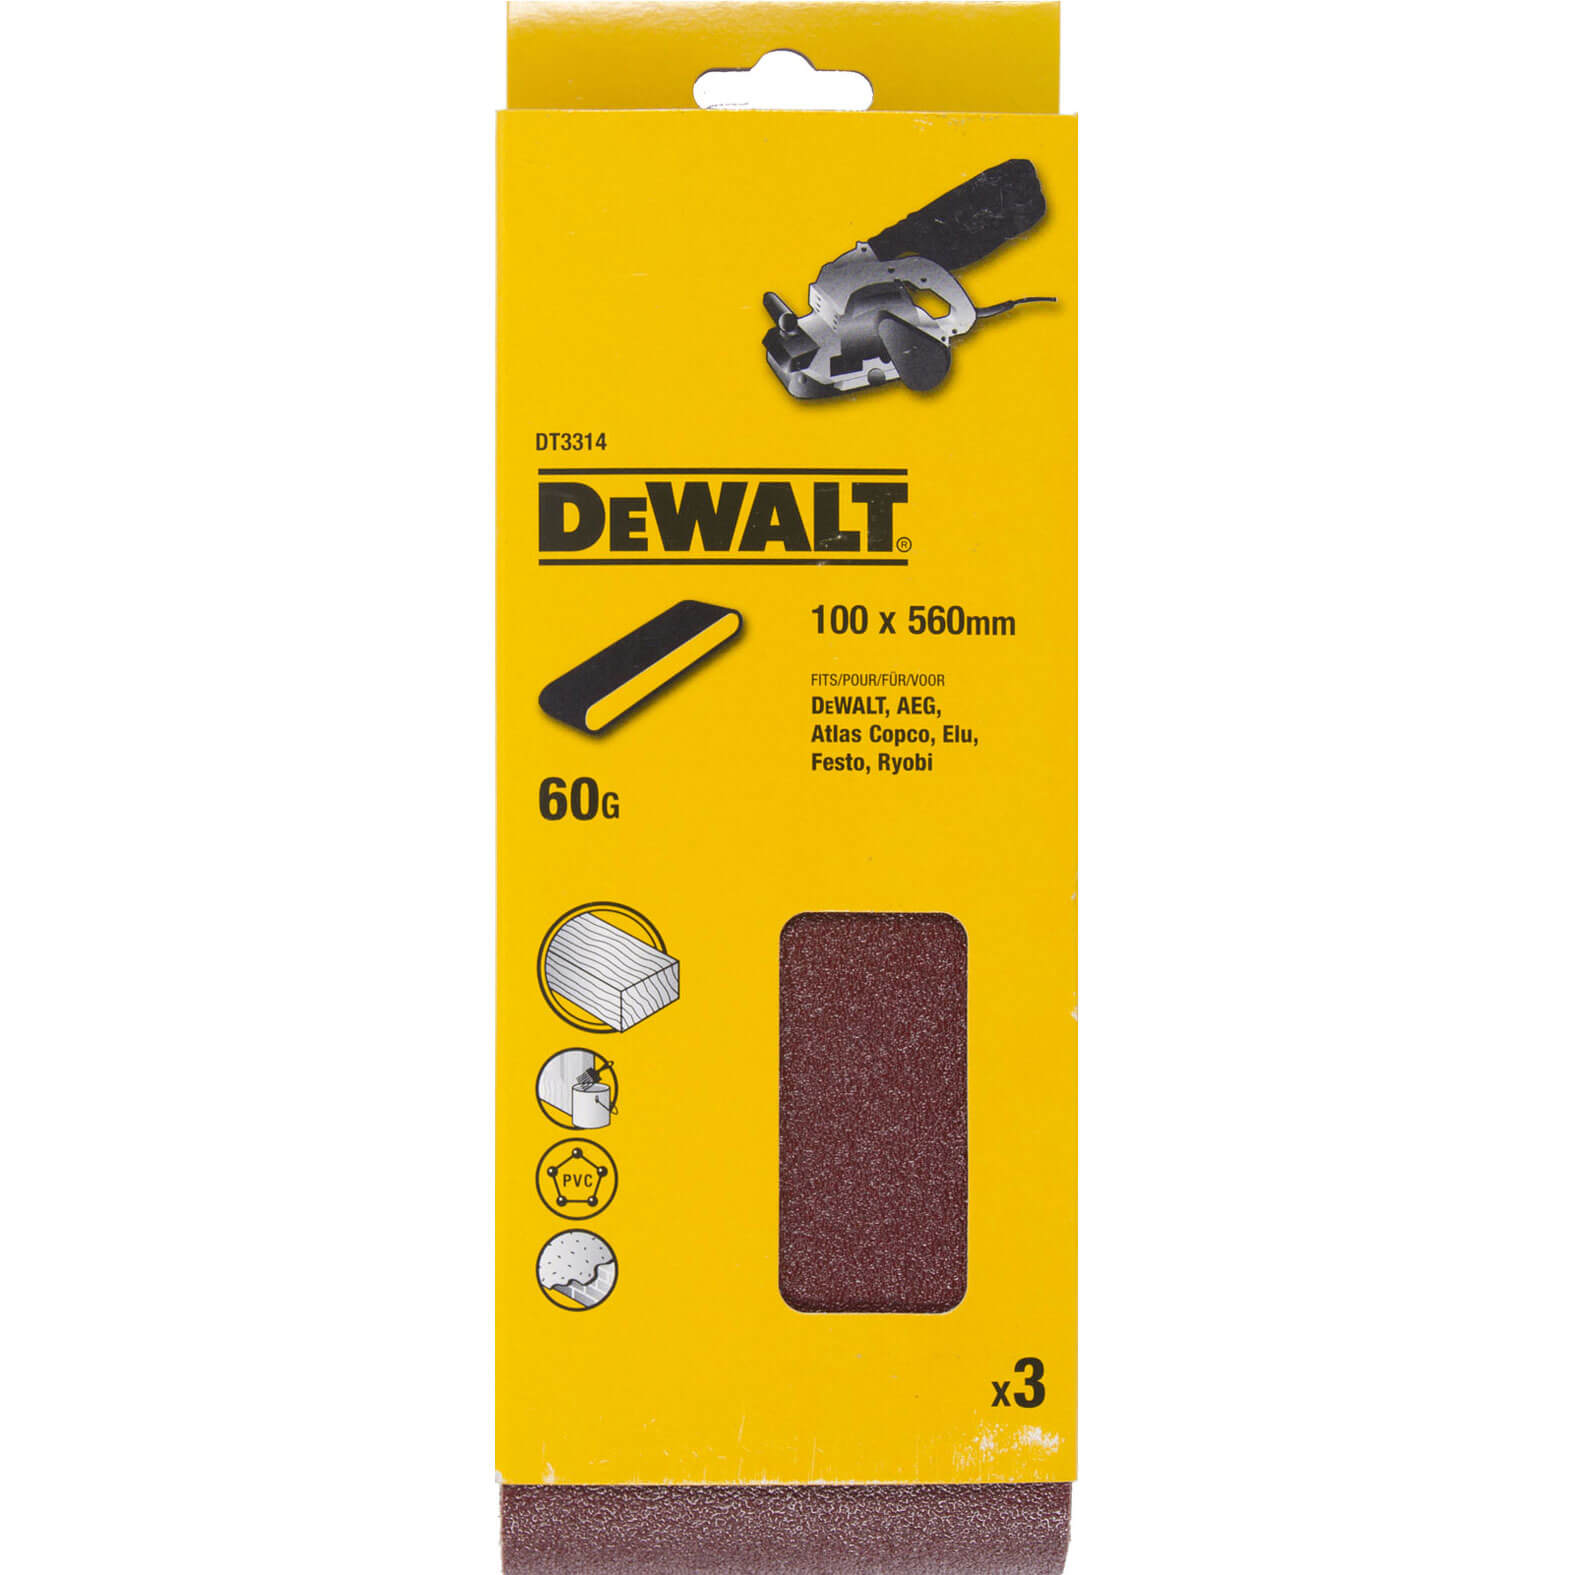 Image of DeWalt 100 x 560mm Sanding Belts 100mm x 560mm 60g Pack of 3